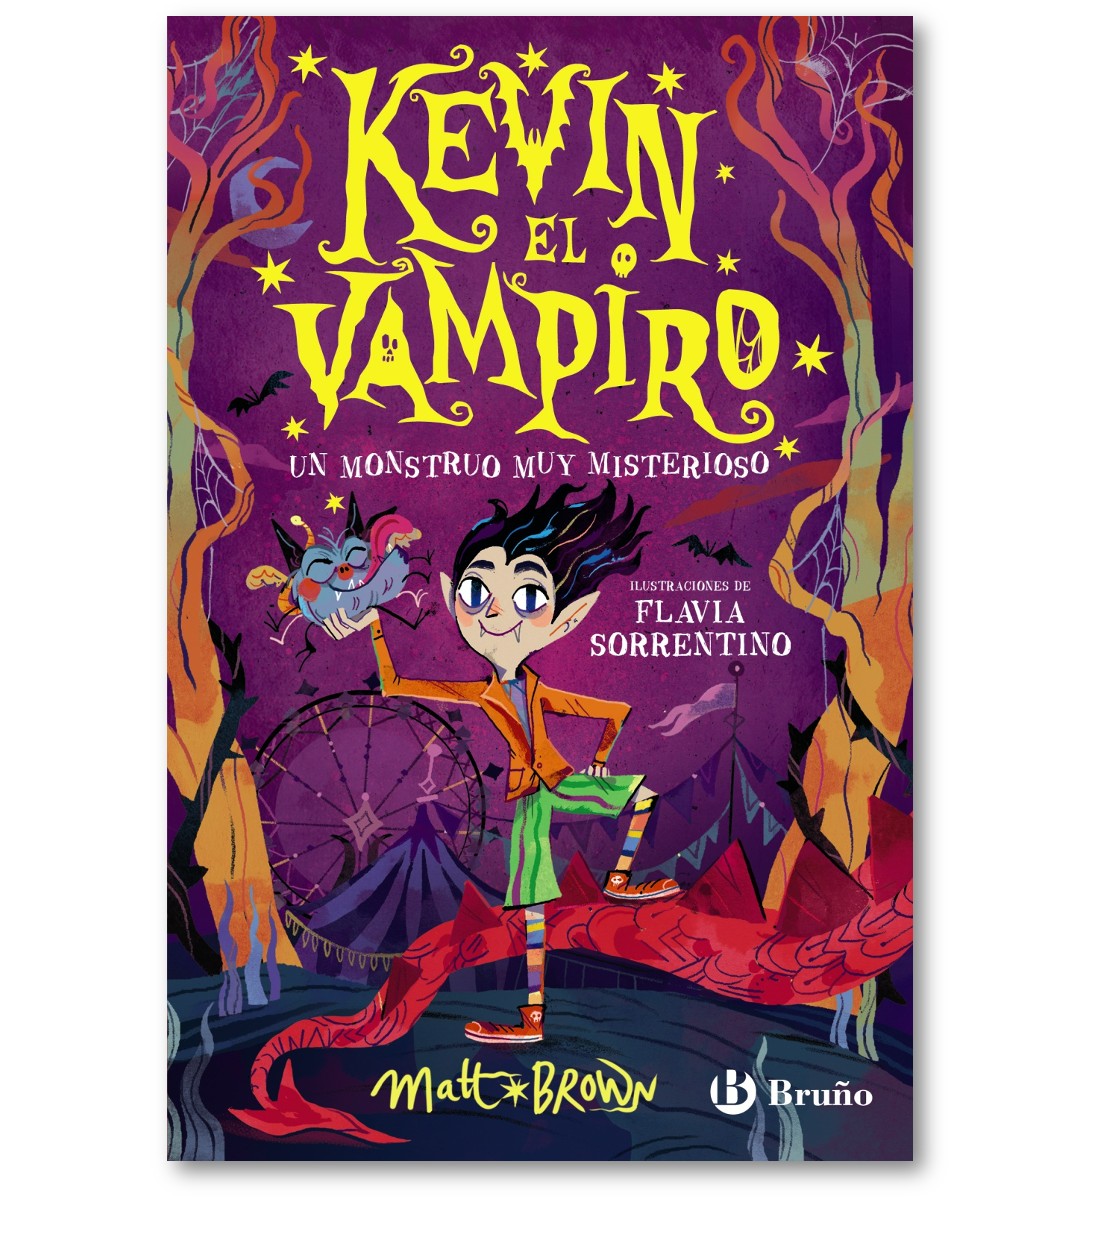 Kevin el vampiro, 1. Un monstruo muy misterioso